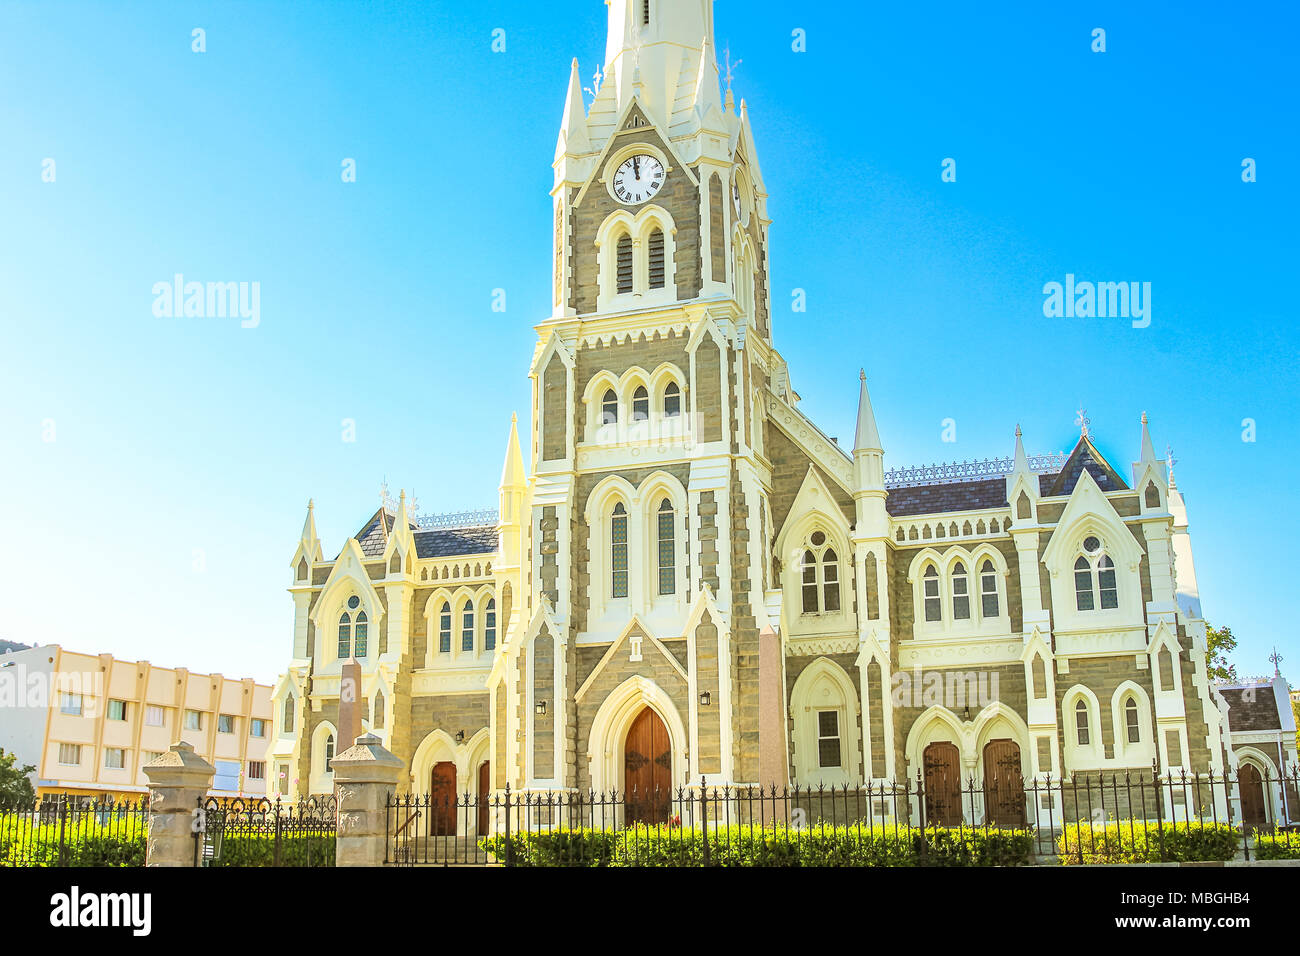 Majestic Victorian Gothic reformierten Mutter Kirche in Graaff-Reinet, Eastern Cape, Großen Karoo, Südafrika. Fassade des historischen niederländischen Kirche, erbaut 1886, im Zentrum der Stadt. Sonnigen Tag, blauer Himmel Stockfoto